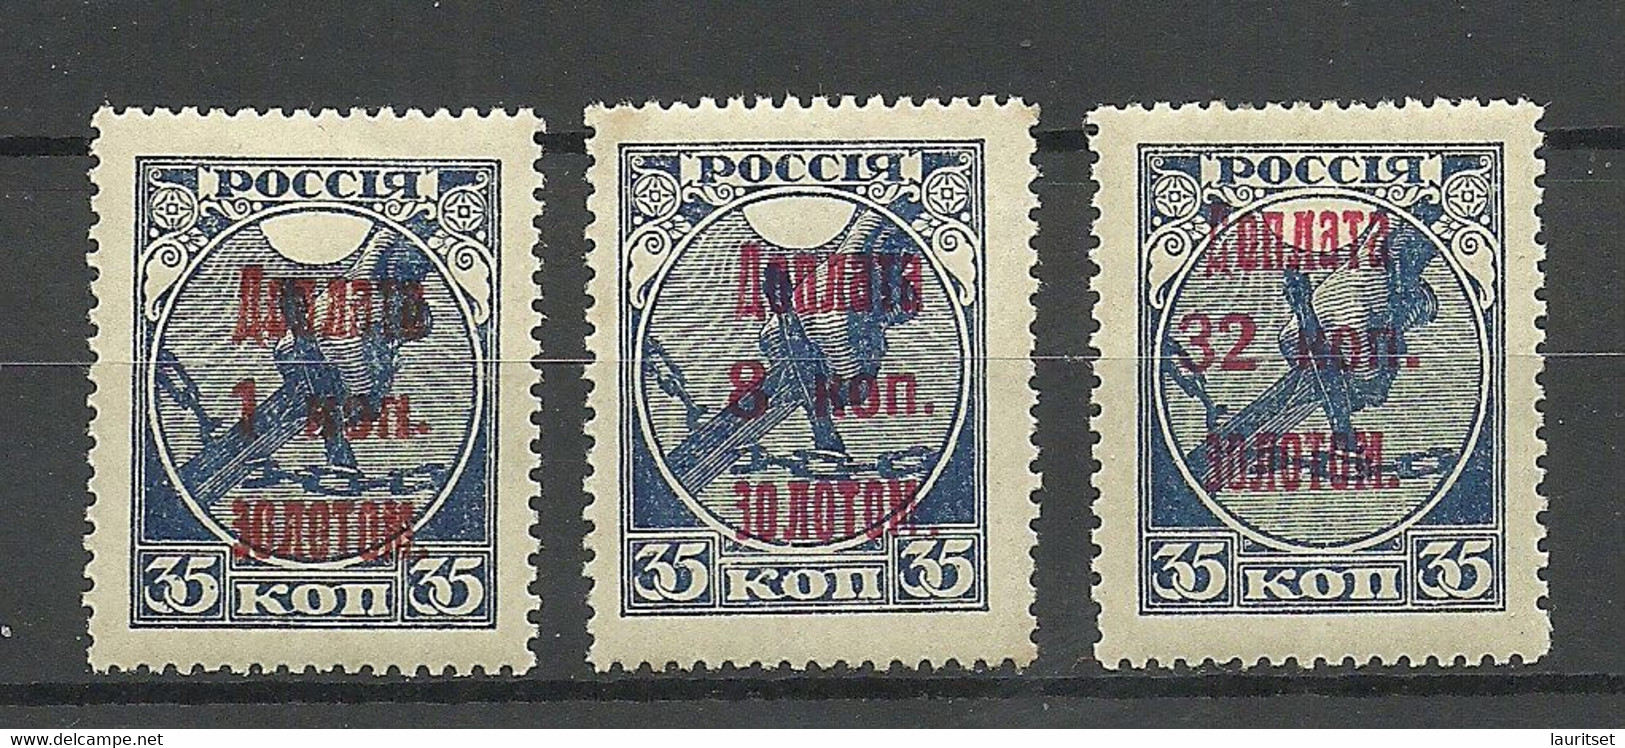 RUSSLAND RUSSIA 1924/25 Postage Due Portomarken Michel 1 & 4 & 8 * - Postage Due